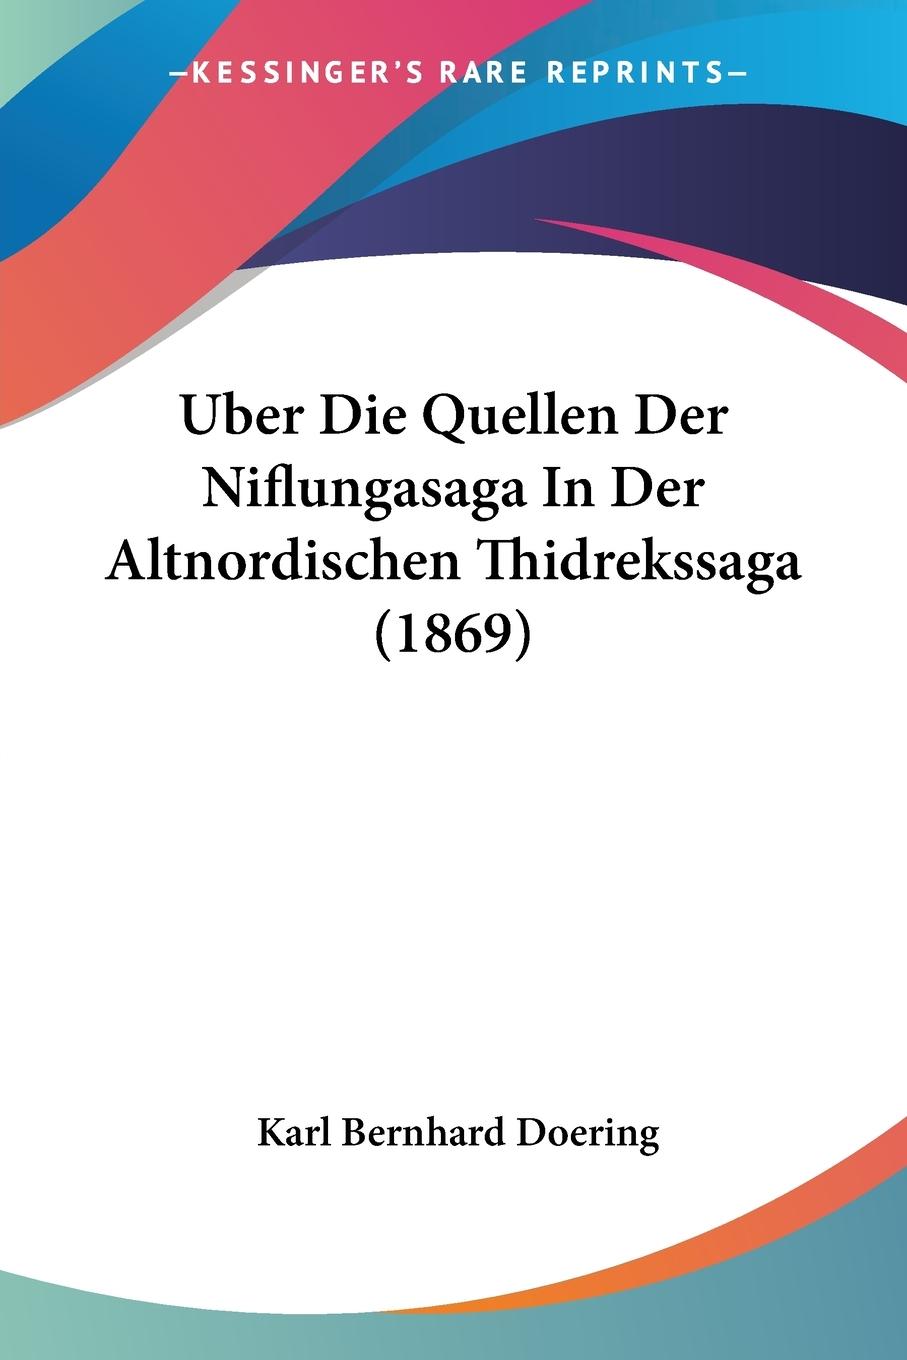 Uber Die Quellen Der Niflungasaga In Der Altnordischen Thidrekssaga (1869) - Doering, Karl Bernhard